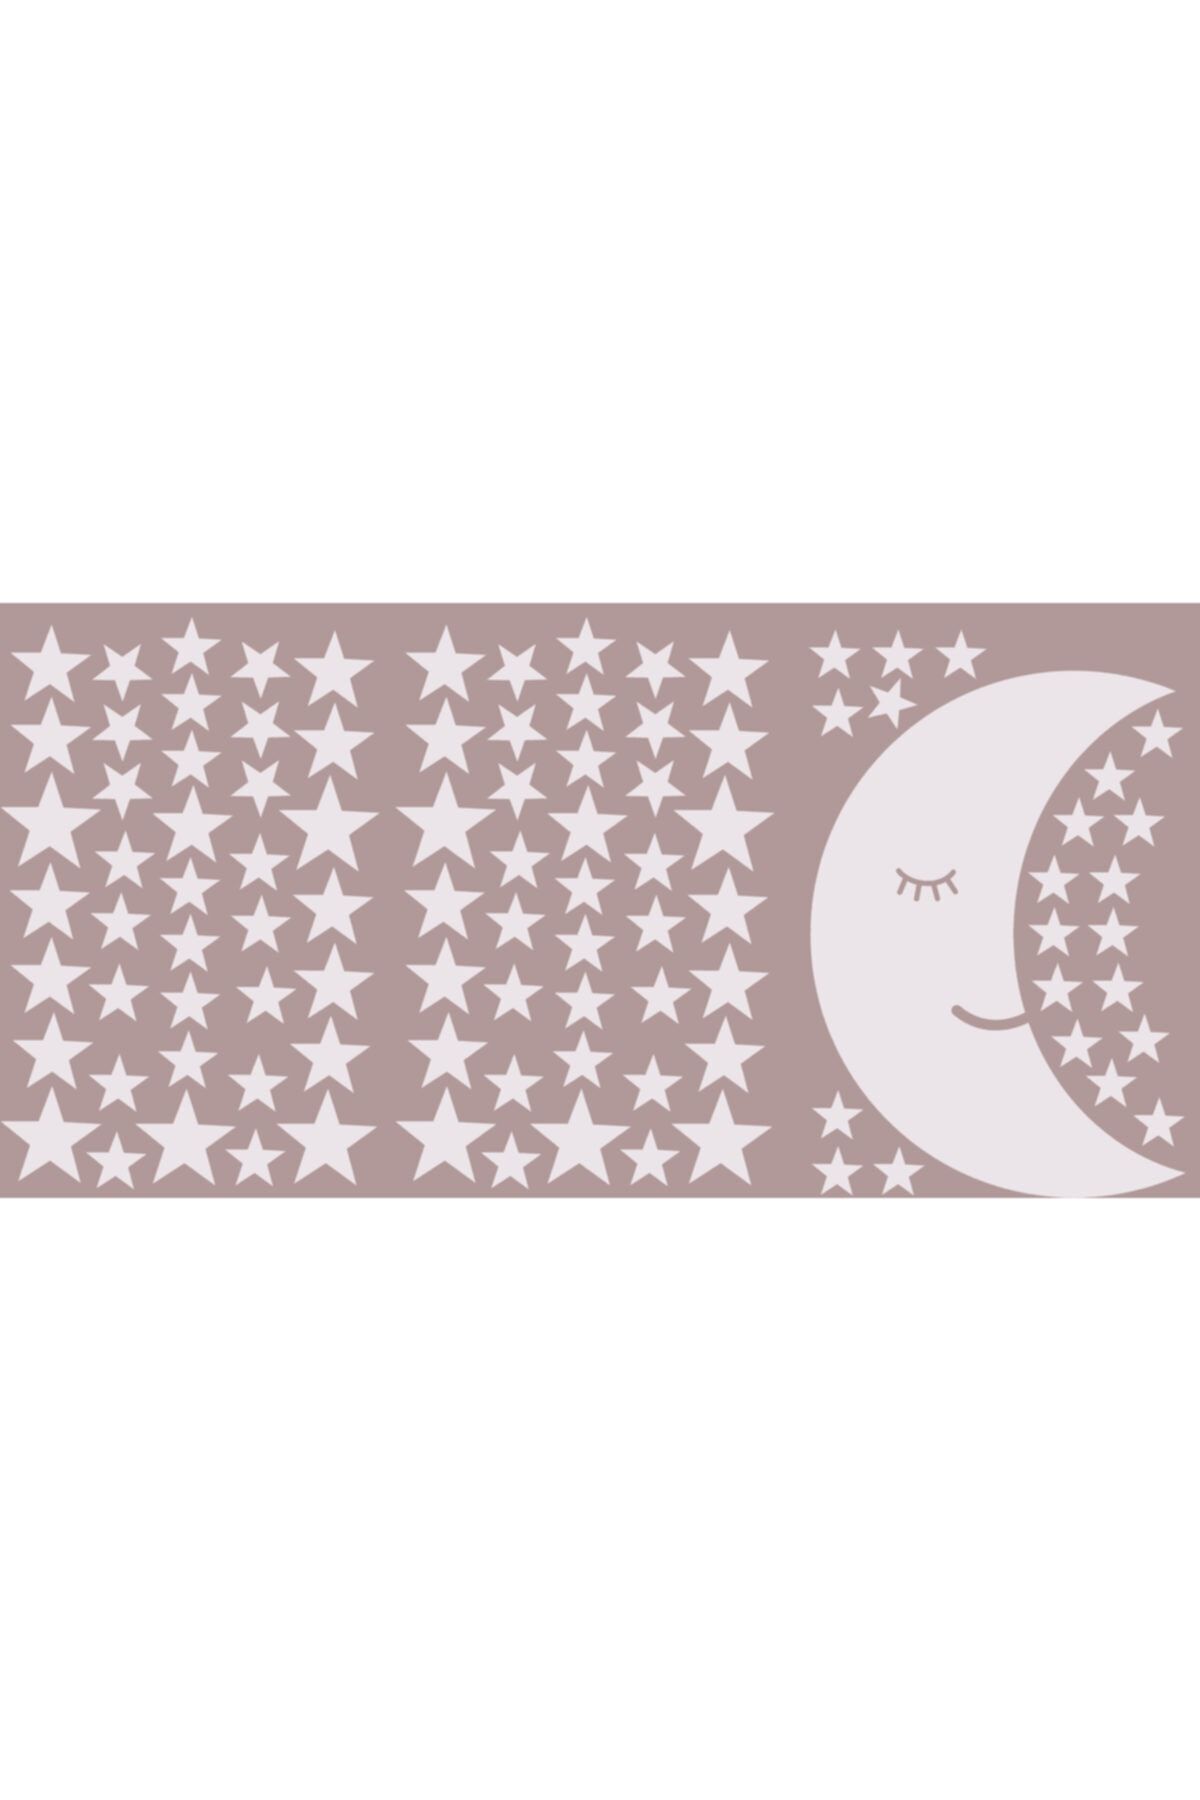 BugyBagy 100 Yıldız Sticker 1 Gülen Aydede Çocuk Odası Dekorasyon Seti